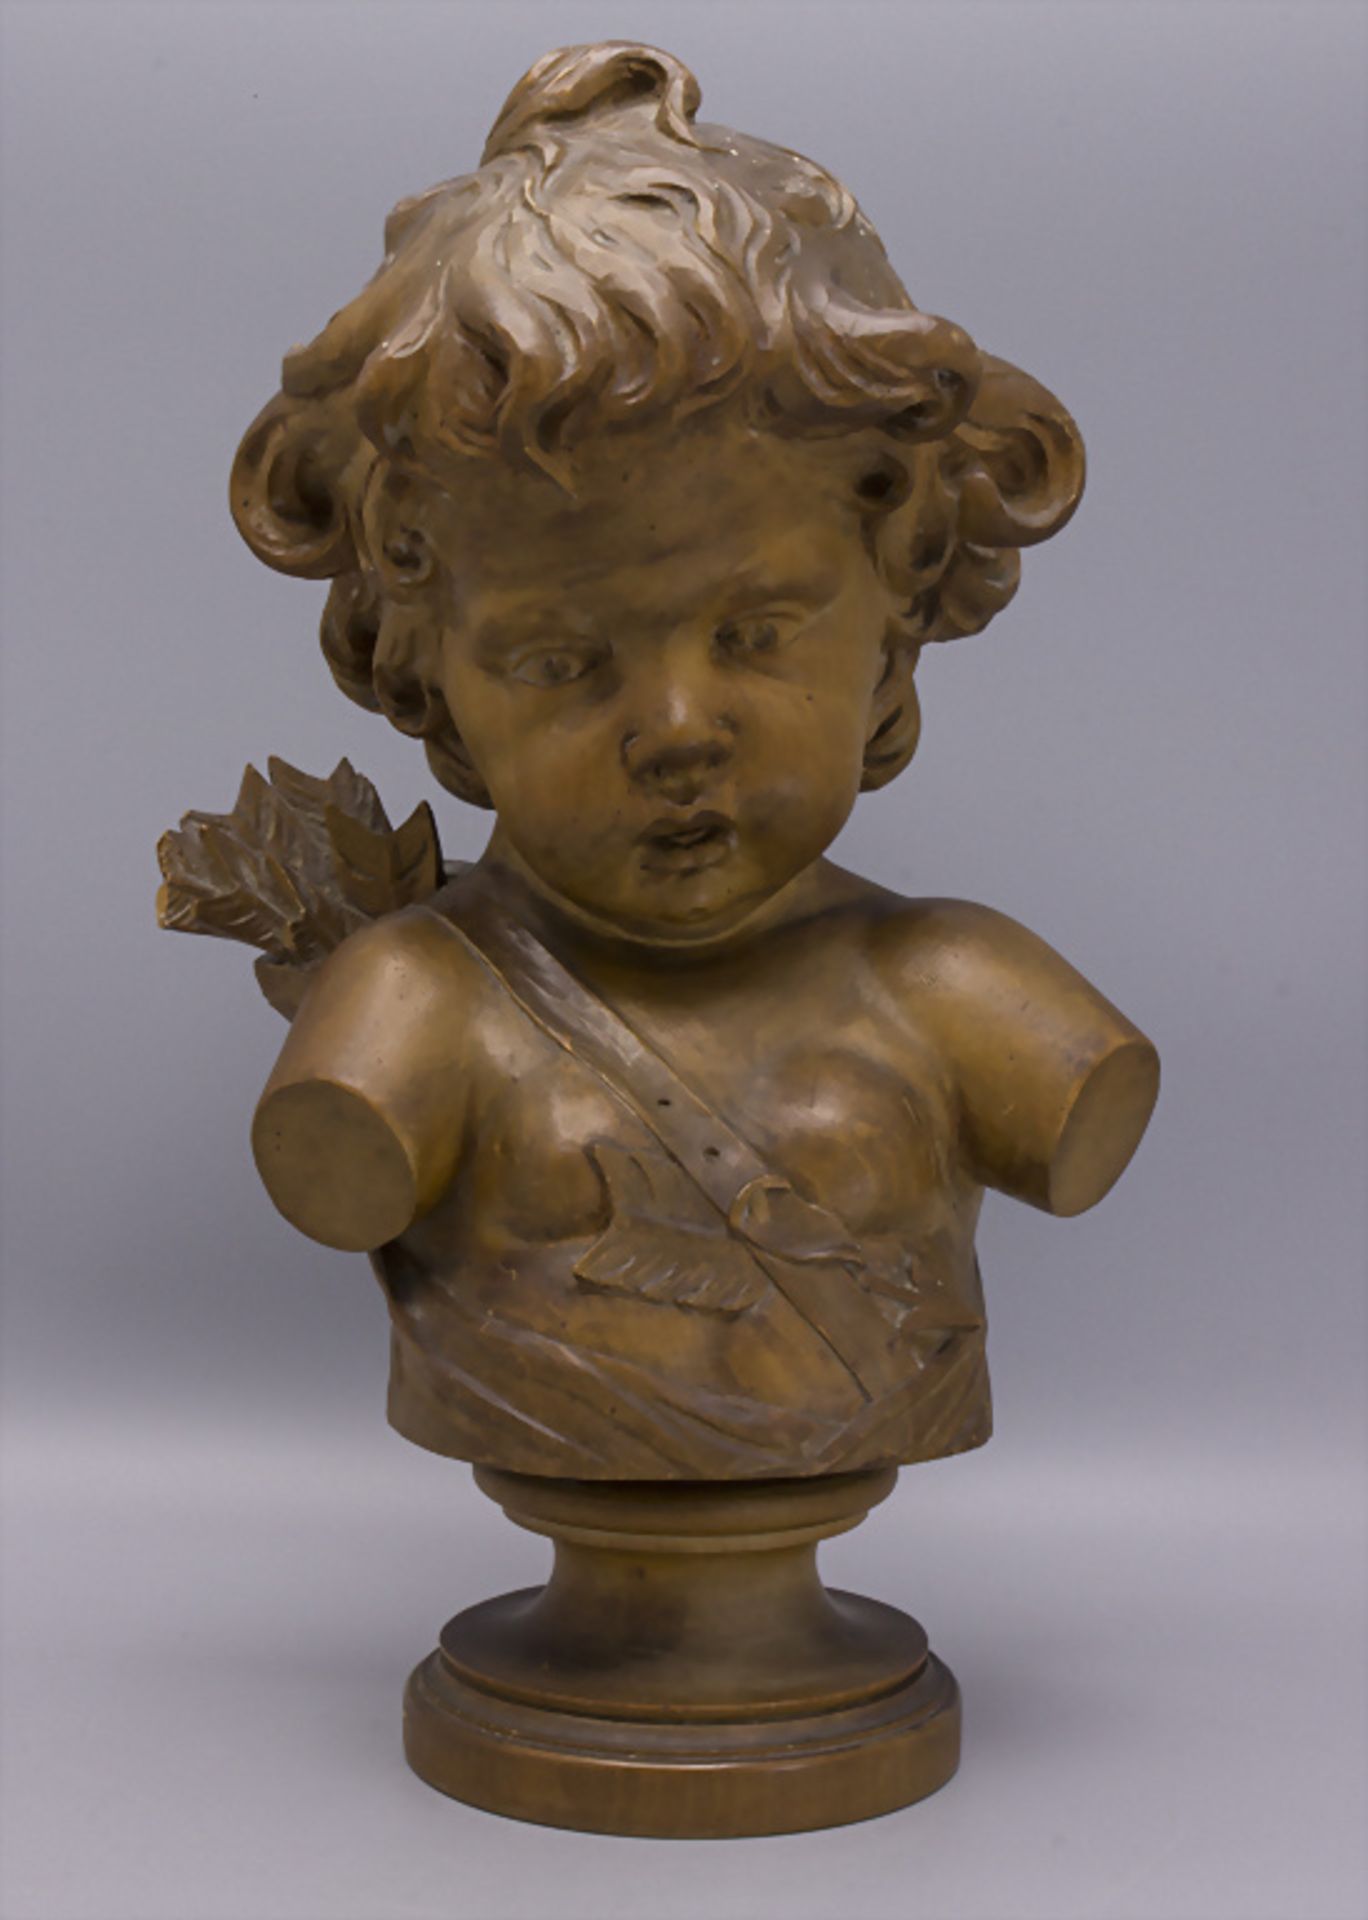 Holzskulptur 'Amor' / A wooden sculpture 'Cupid', um 1900